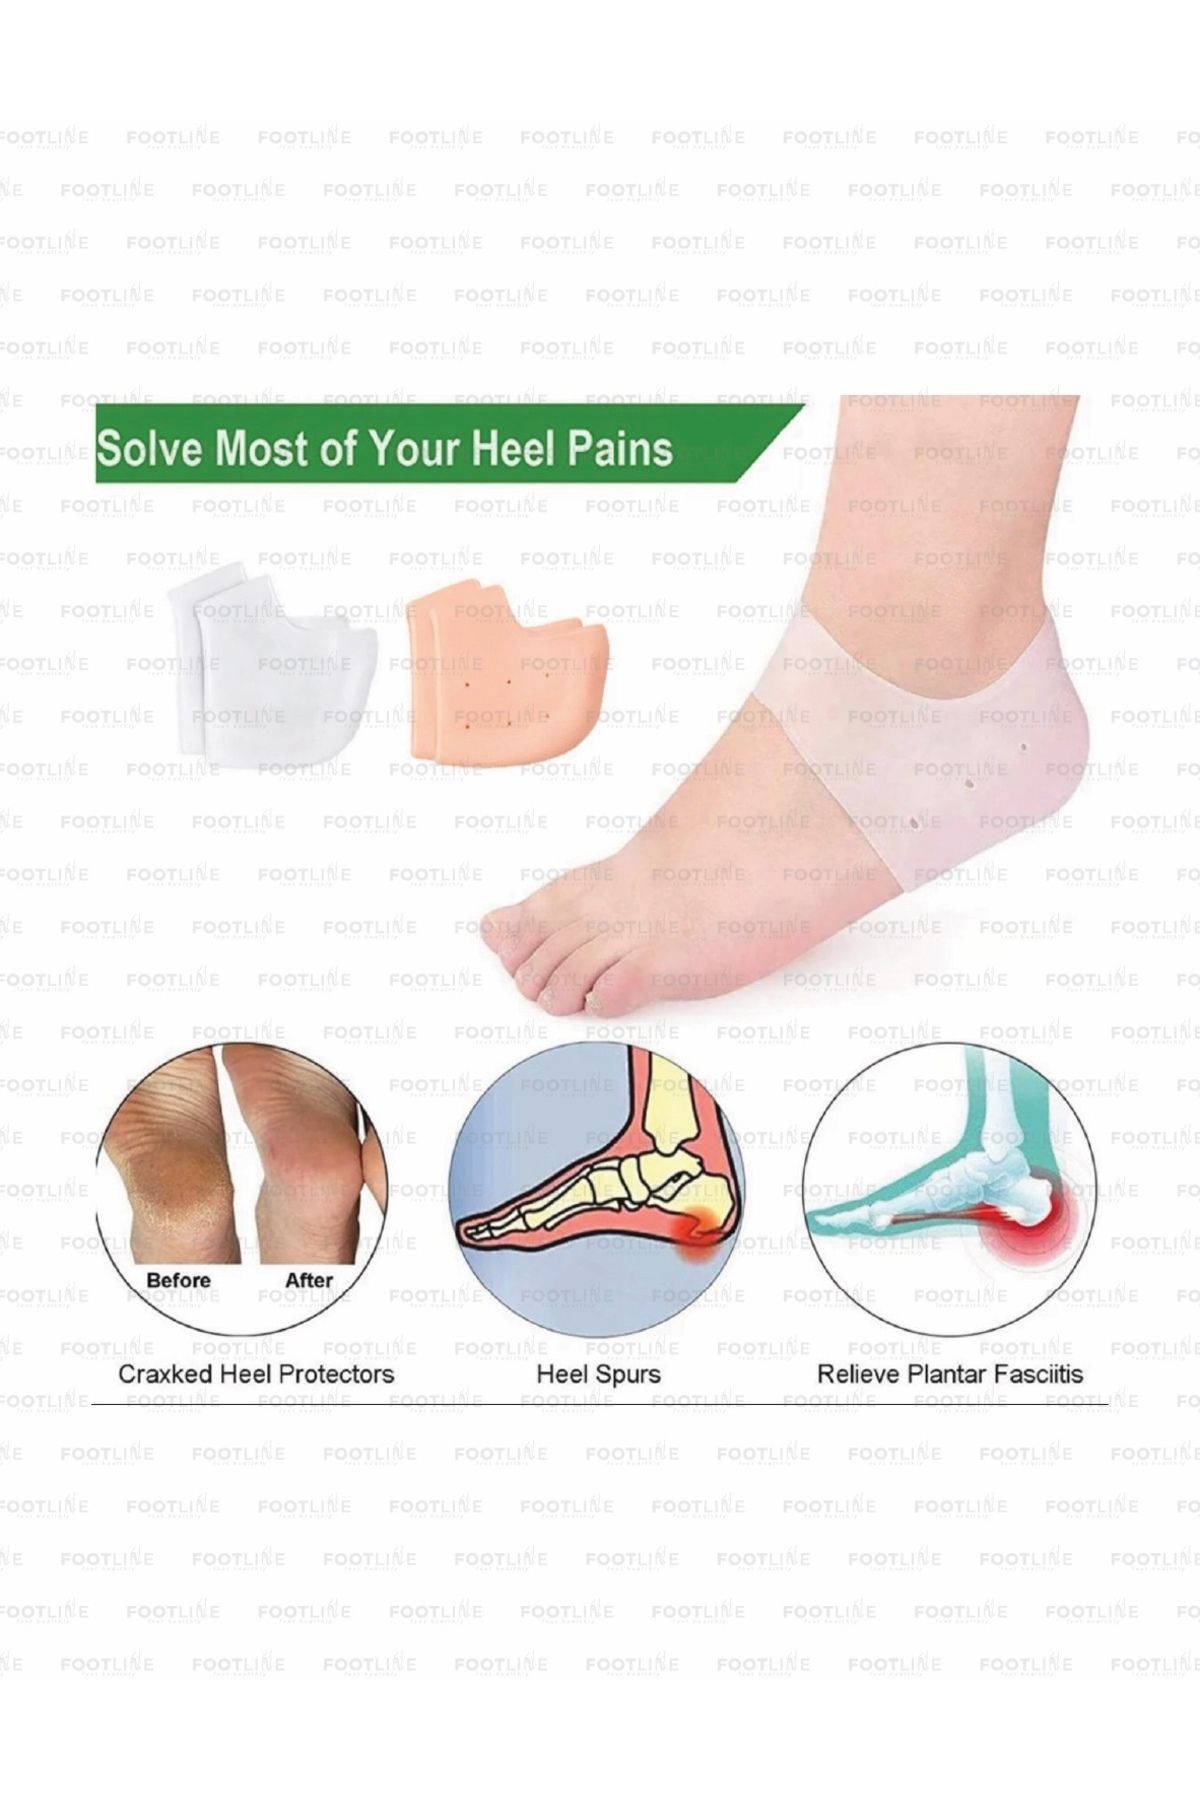 footlıne foot healthly Ortopedik Silikon Topuk Dikeni Gömleği, Çorabı, Çatlak Koruyucu Topukluk (1 Çift)